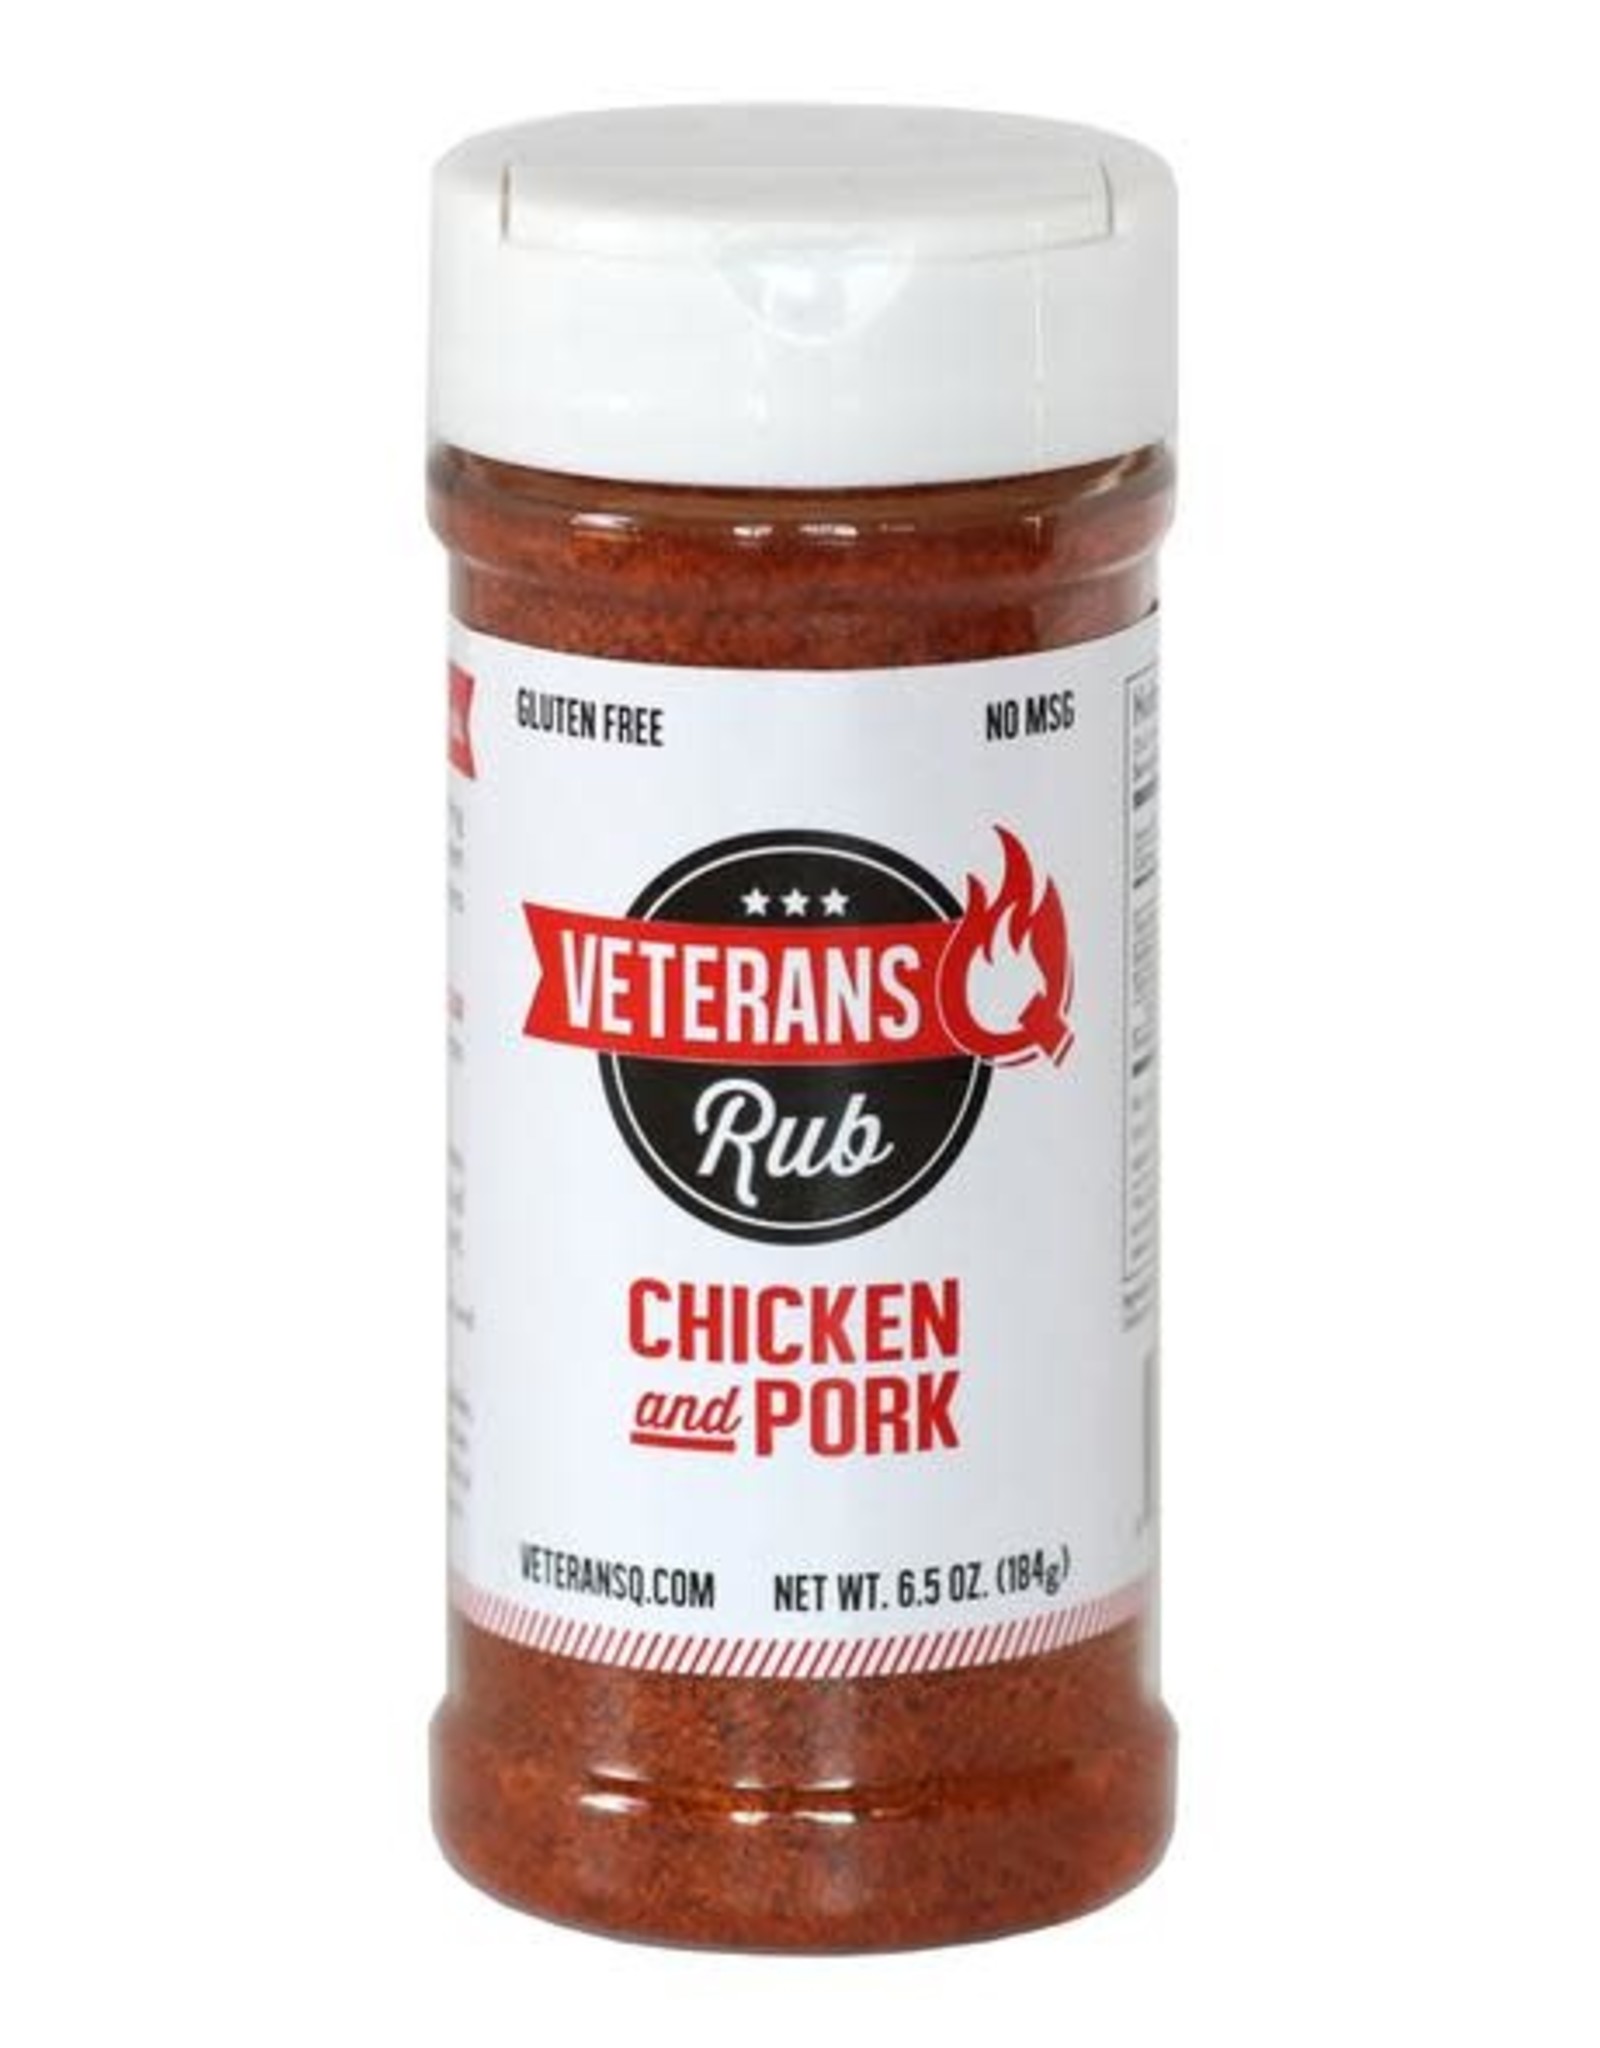 Veteran's Q Veterans Chicken & Pork Rub, 6.5oz.